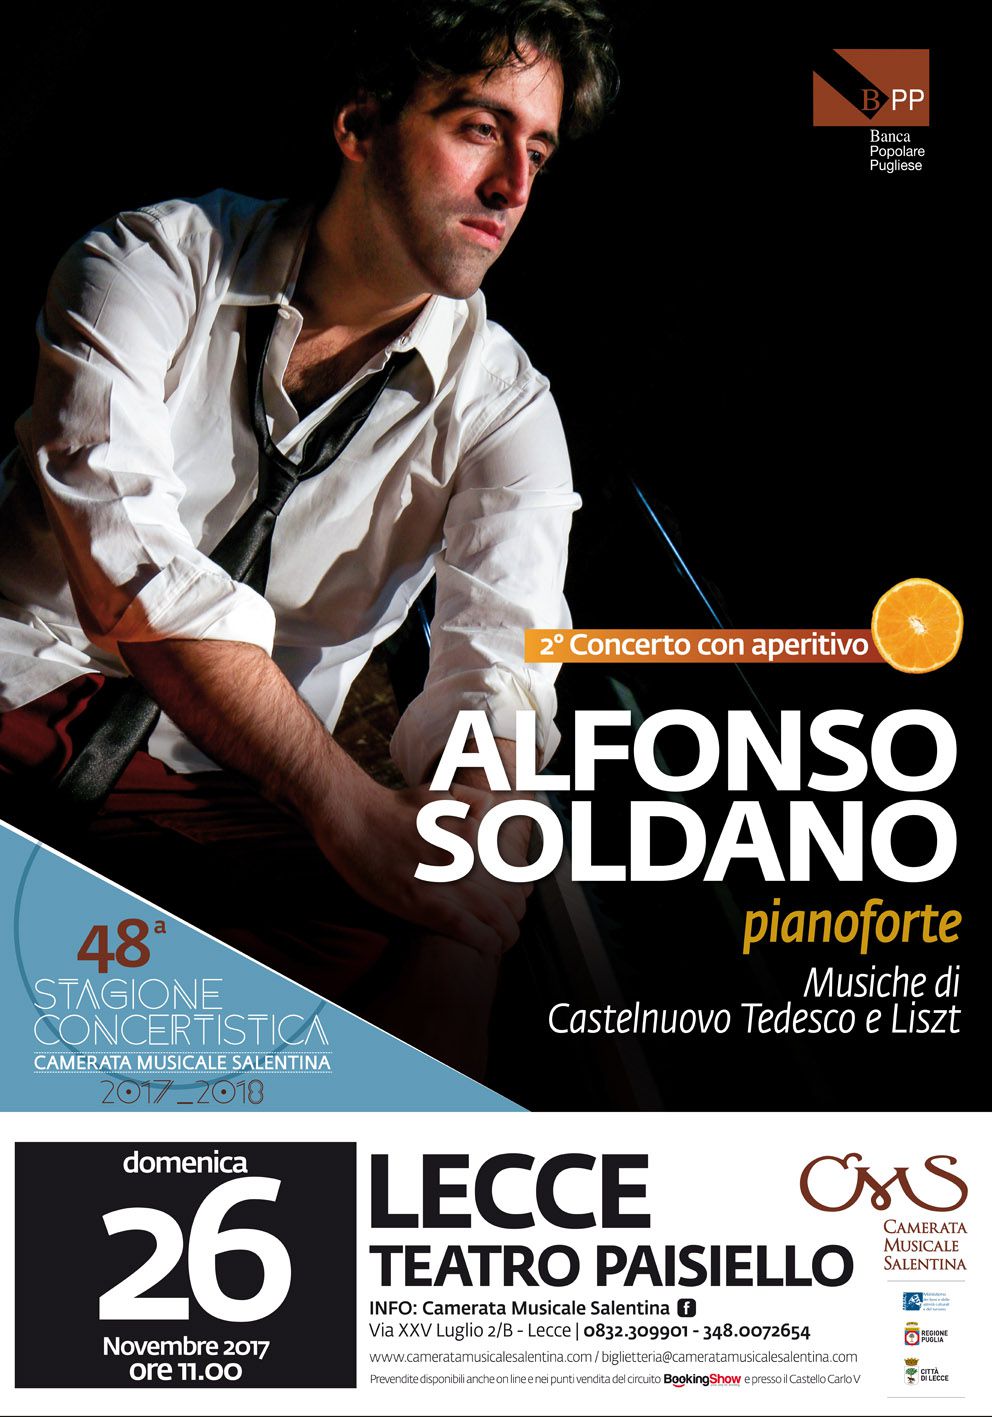 Alfonso Soldano, pianoforte